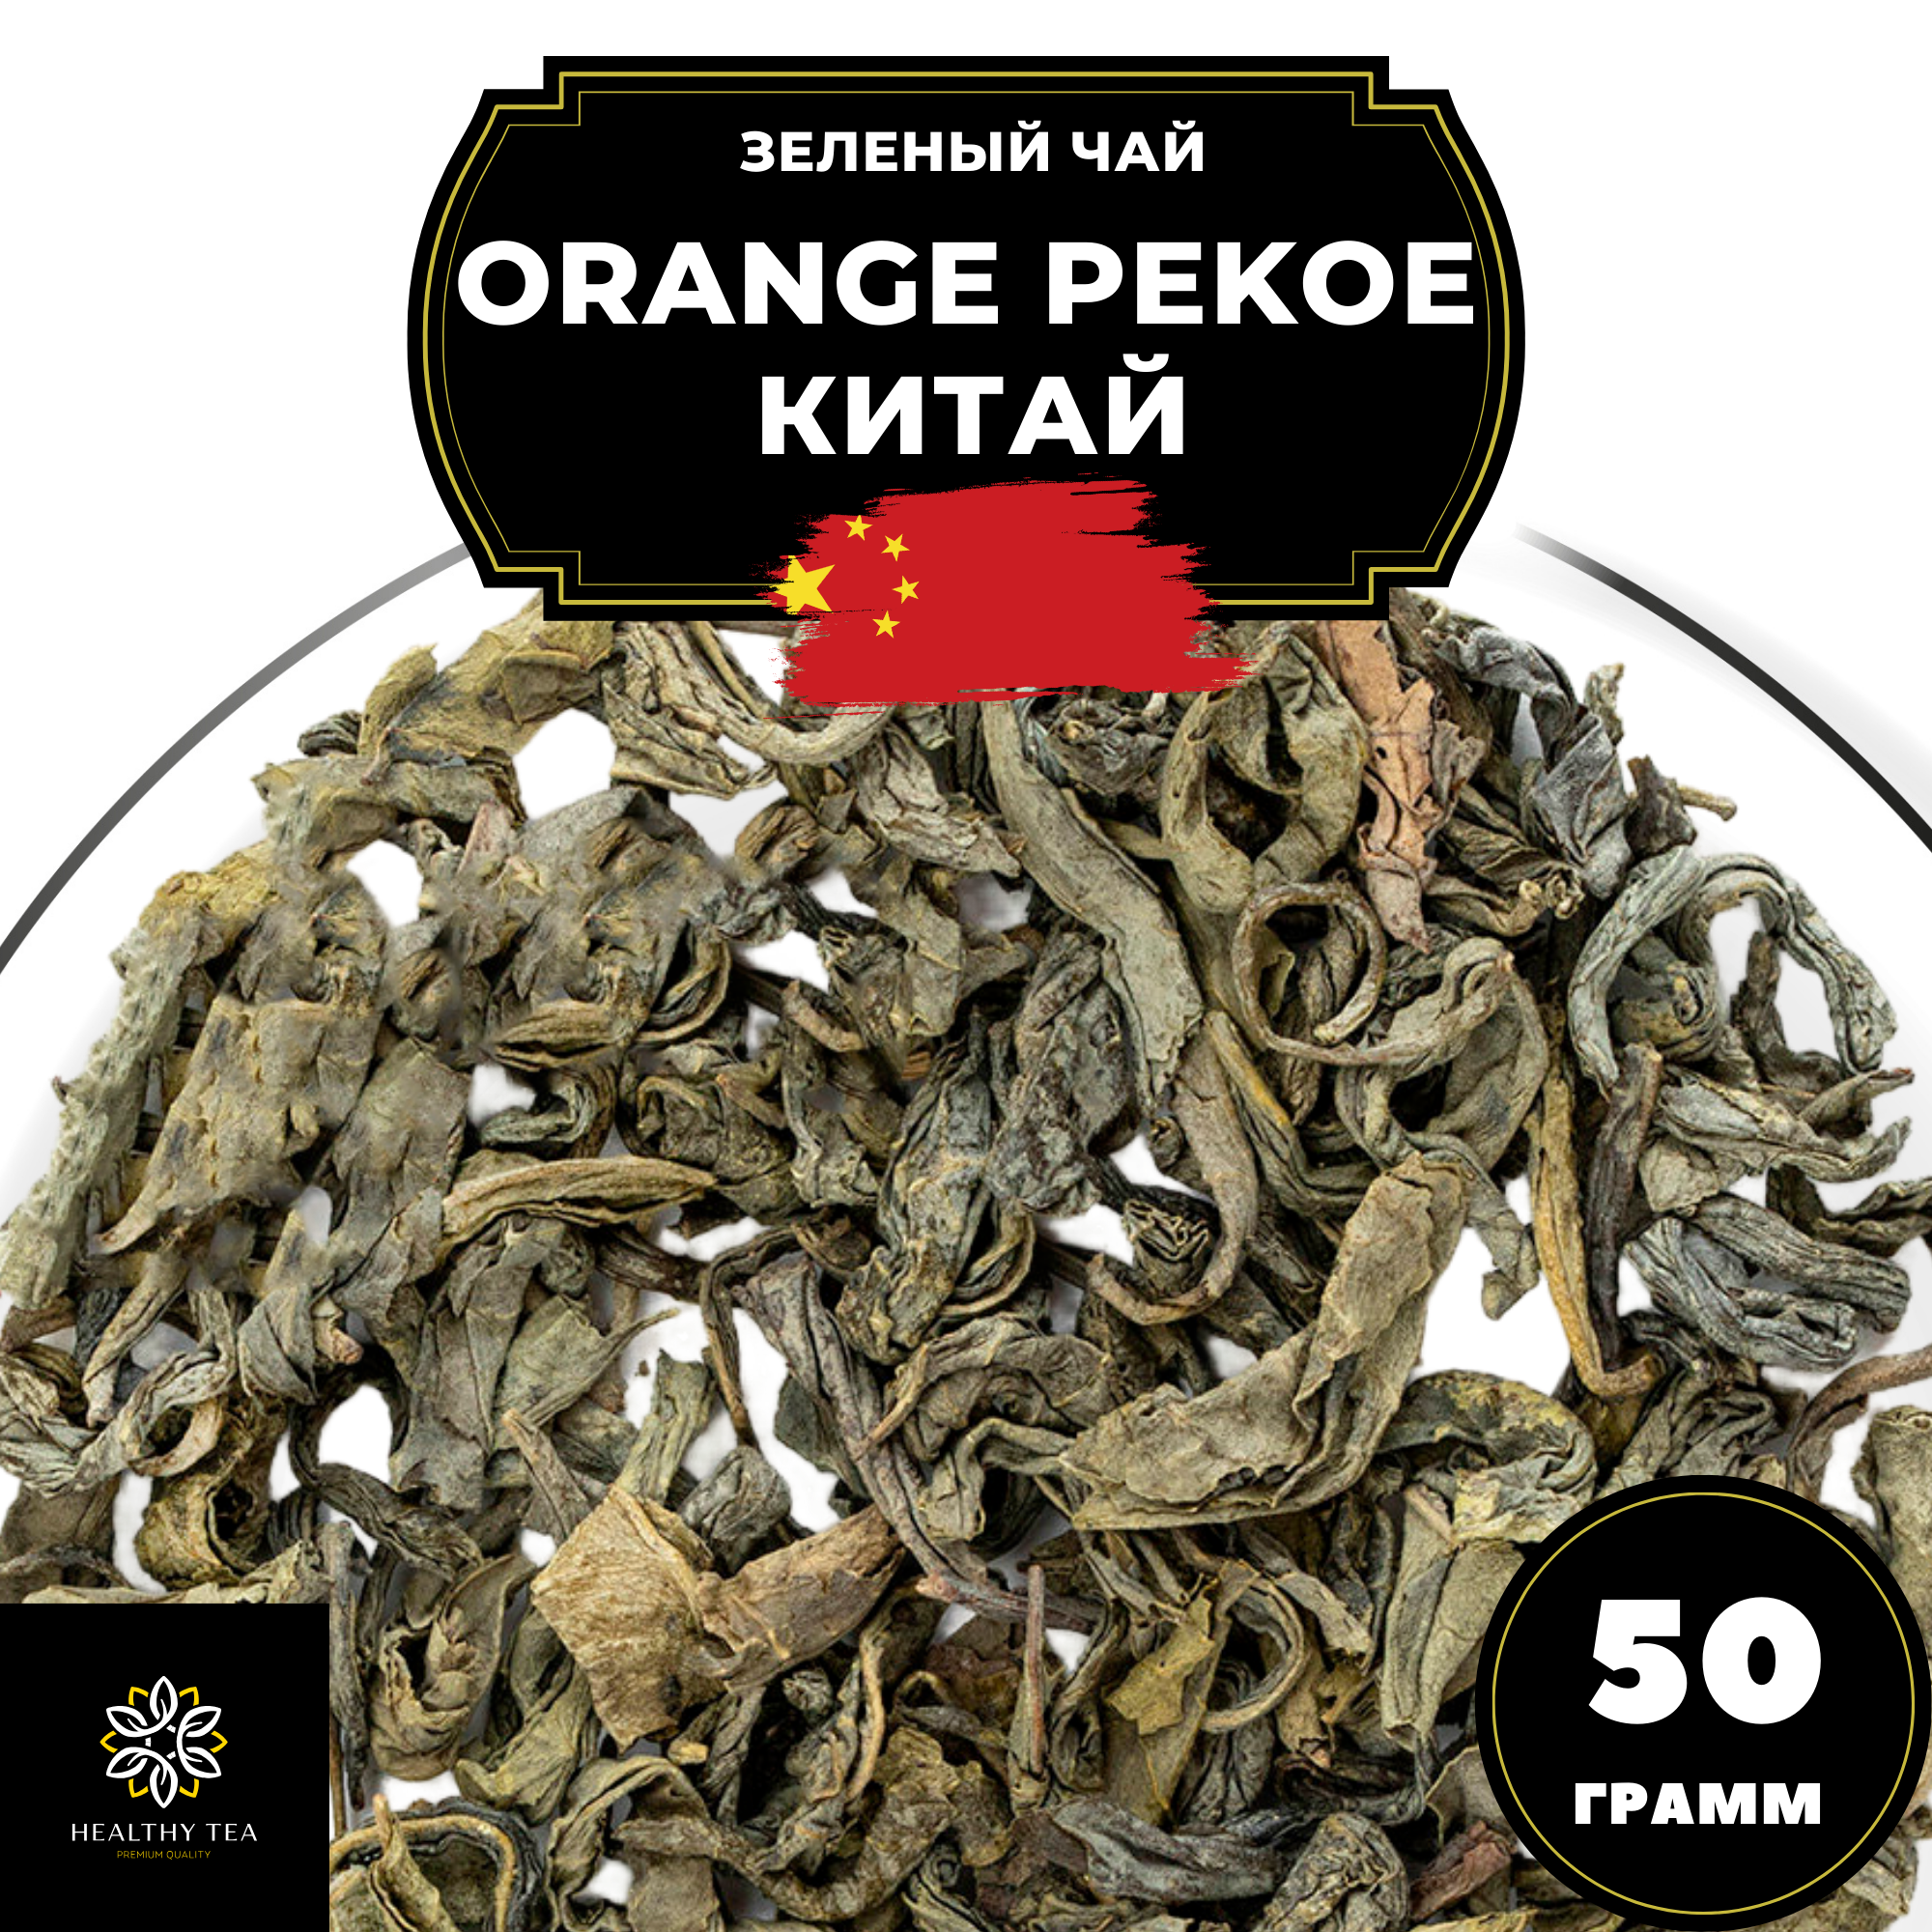 Китайский зеленый чай без добавок Orange Pekoe (Китай) Полезный чай / HEALTHY TEA, 50 г